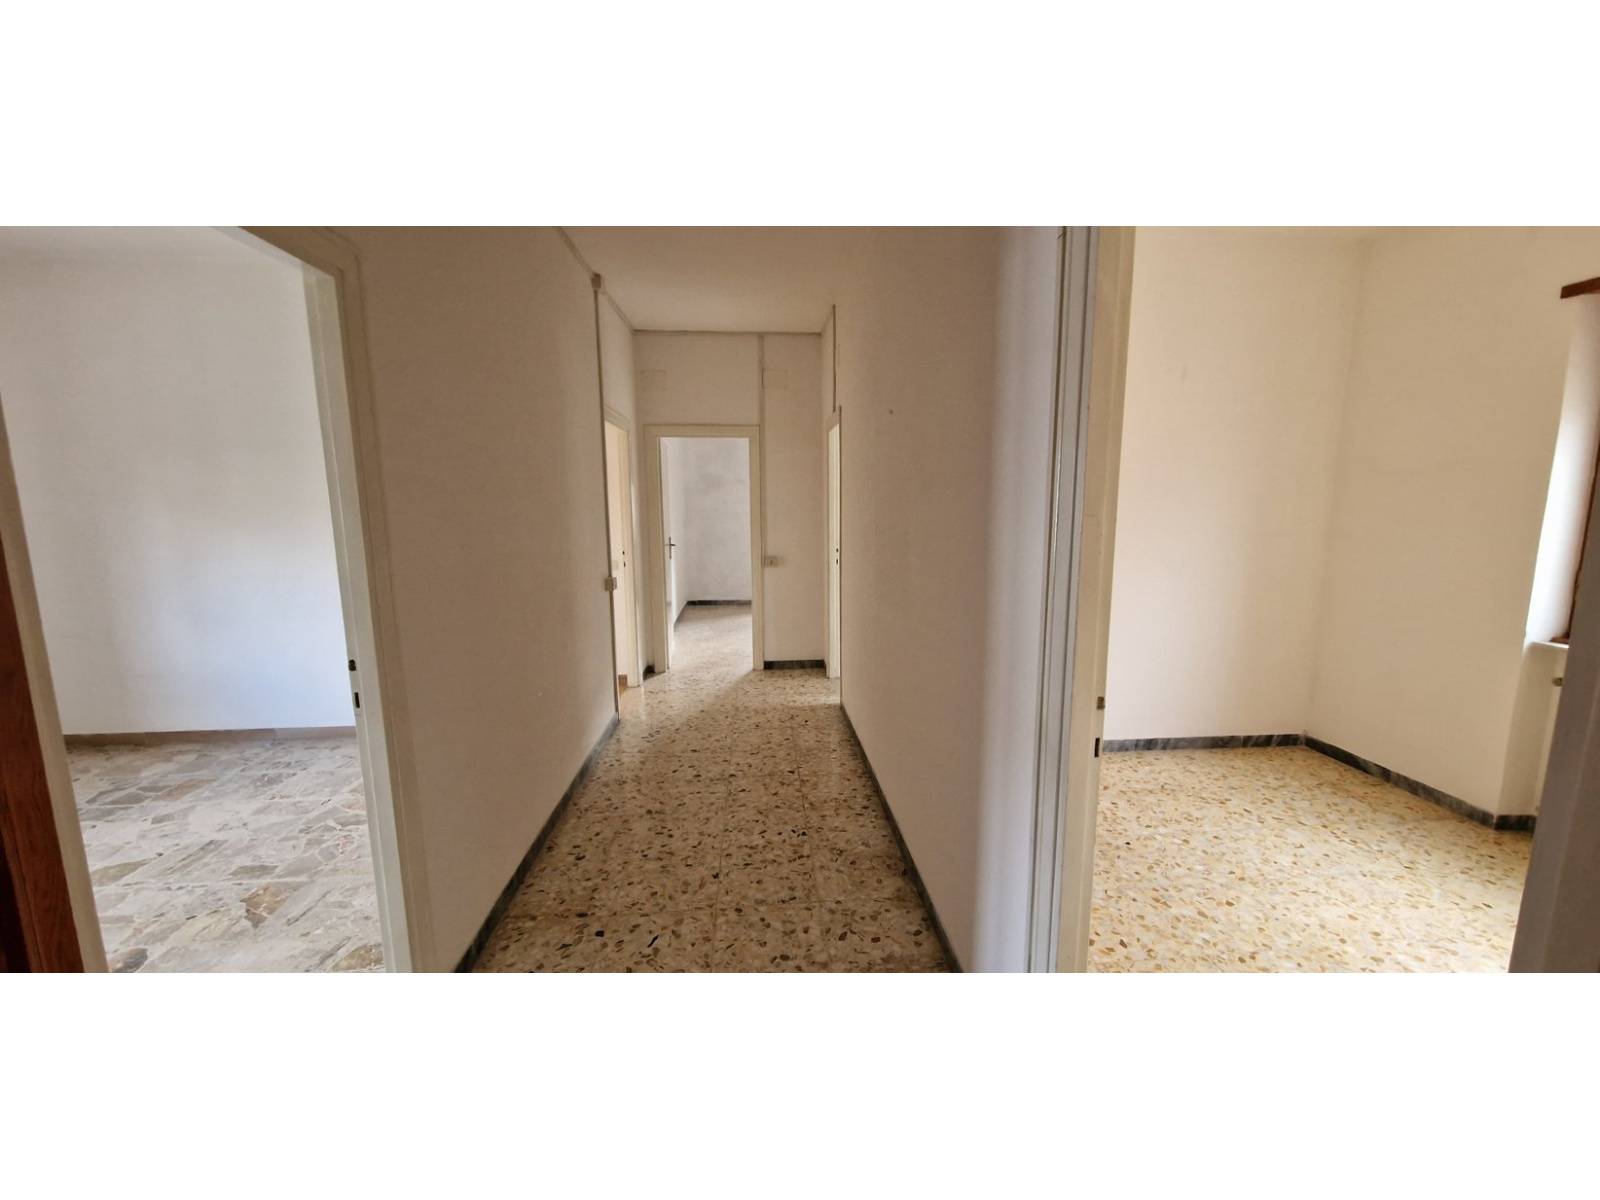 Appartamento in vendita a Roma, 3 locali, zona Zona: 41 . Castel di Guido - Casalotti - Valle Santa, prezzo € 199.000 | CambioCasa.it